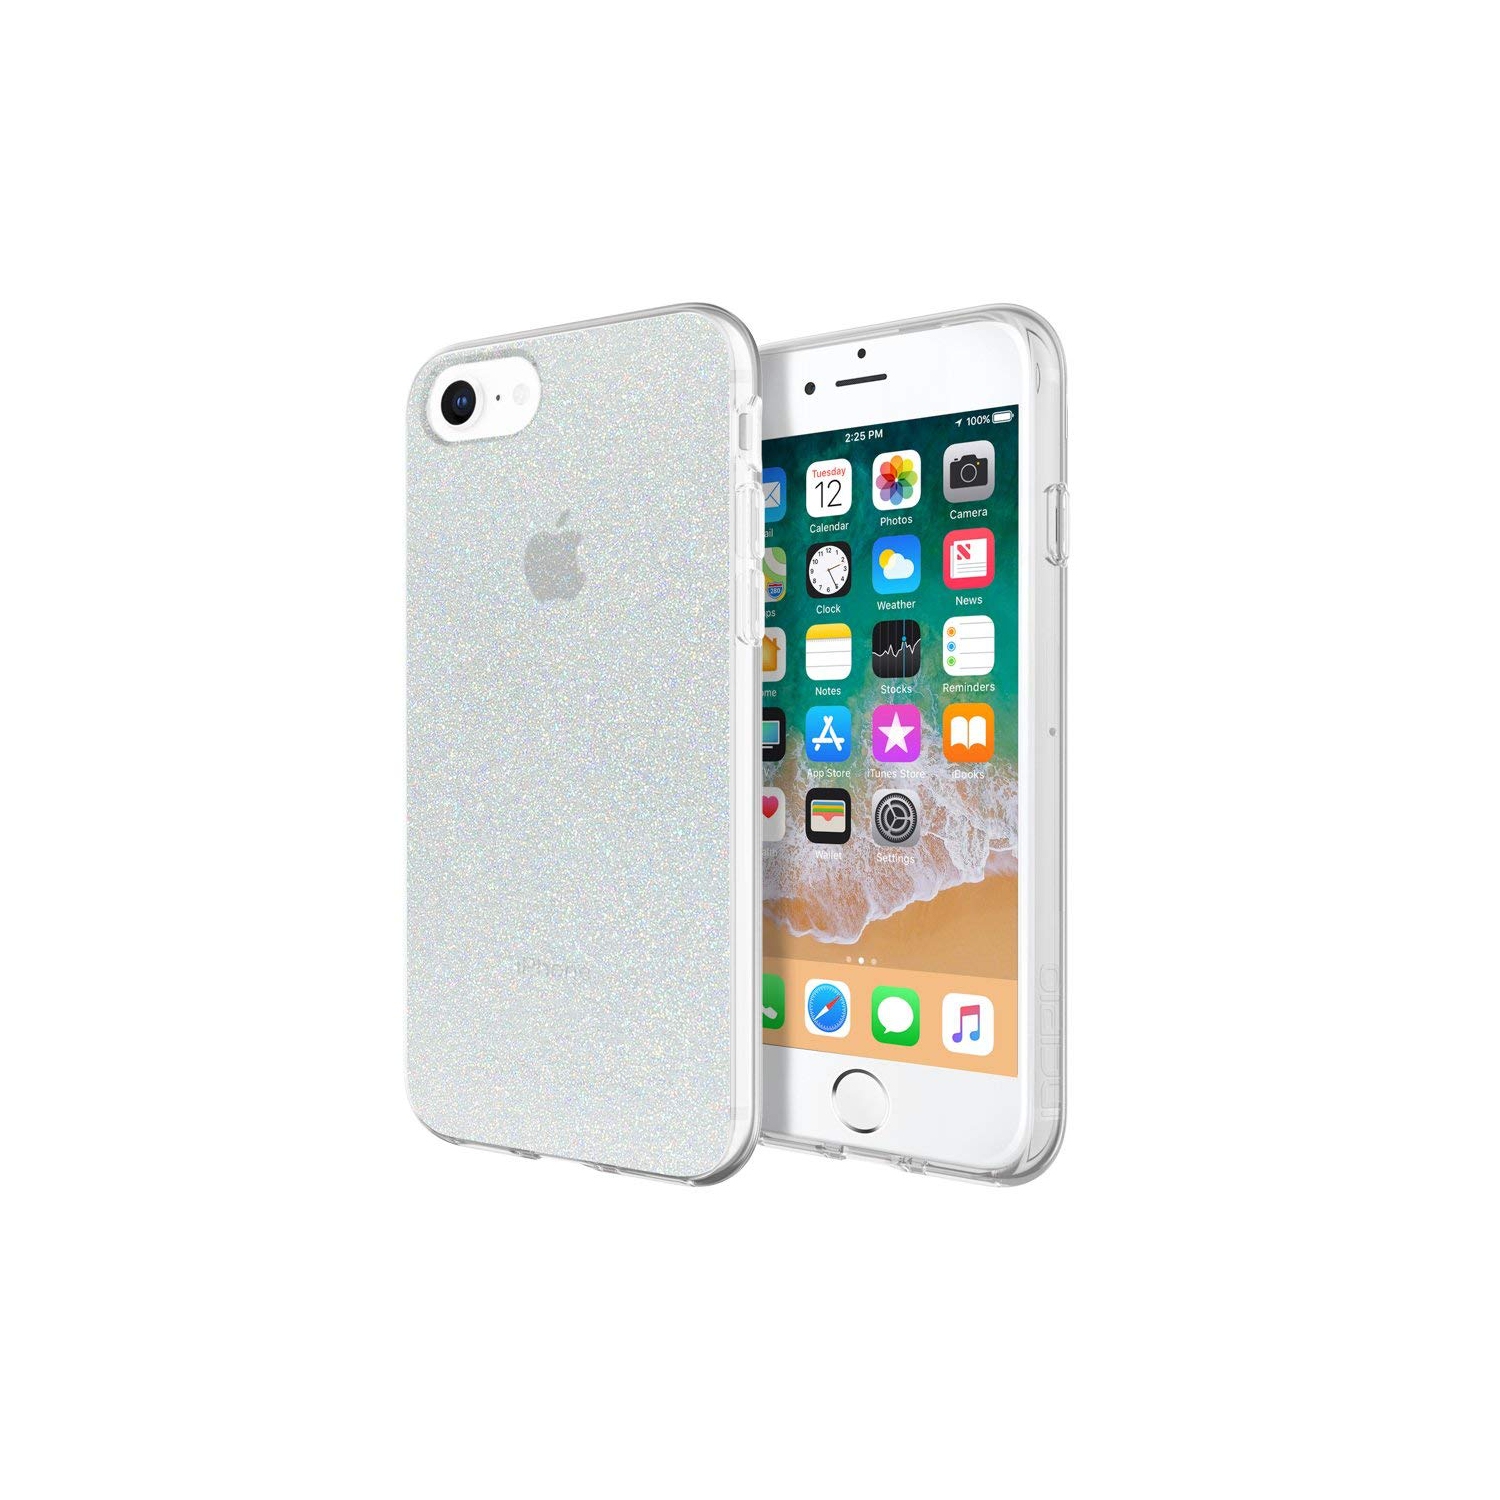 Incipio Apple iPhone 6 6s 7 8 Design Series Case - Iridescent White Glitter